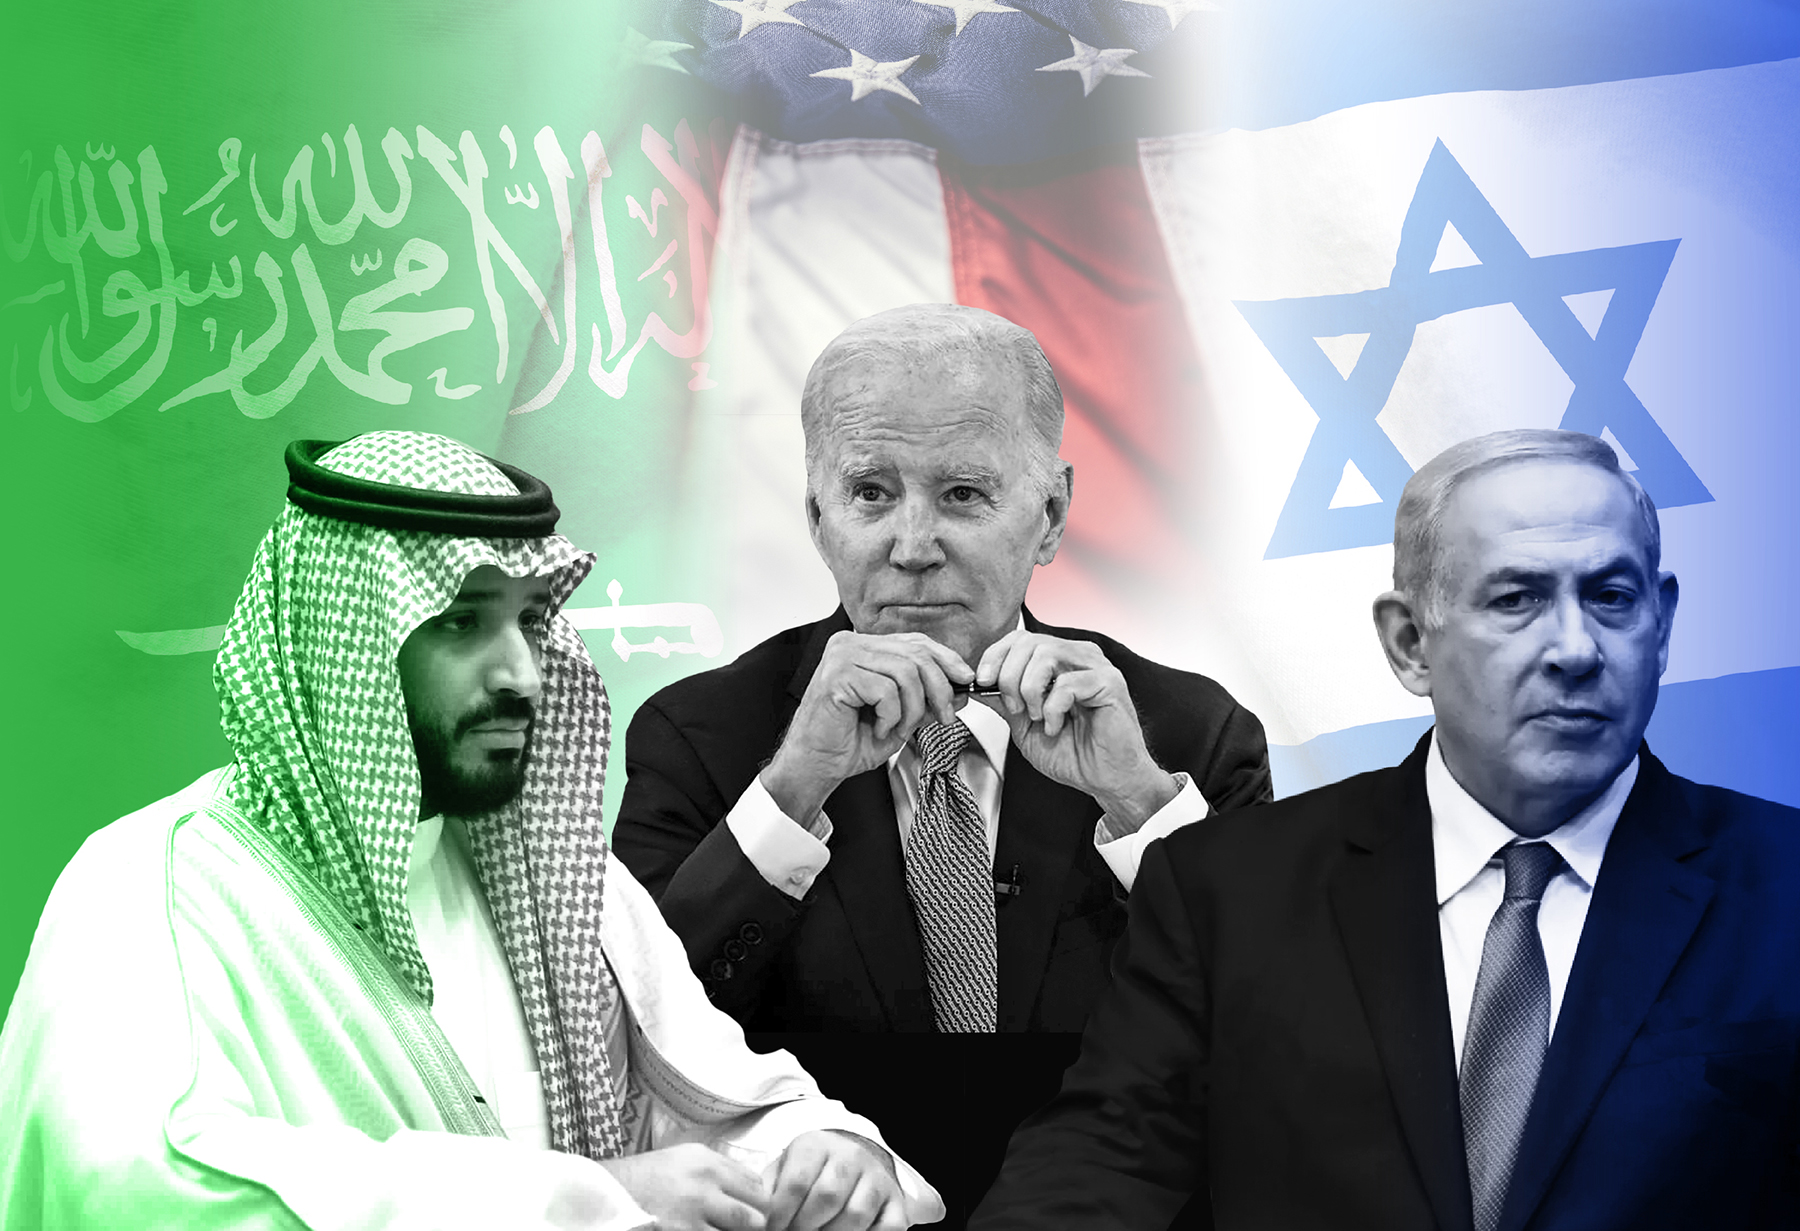 واشنطن تقود حراكاً سياسياً بين إسرائيل والسعودية بهدف التطبيع